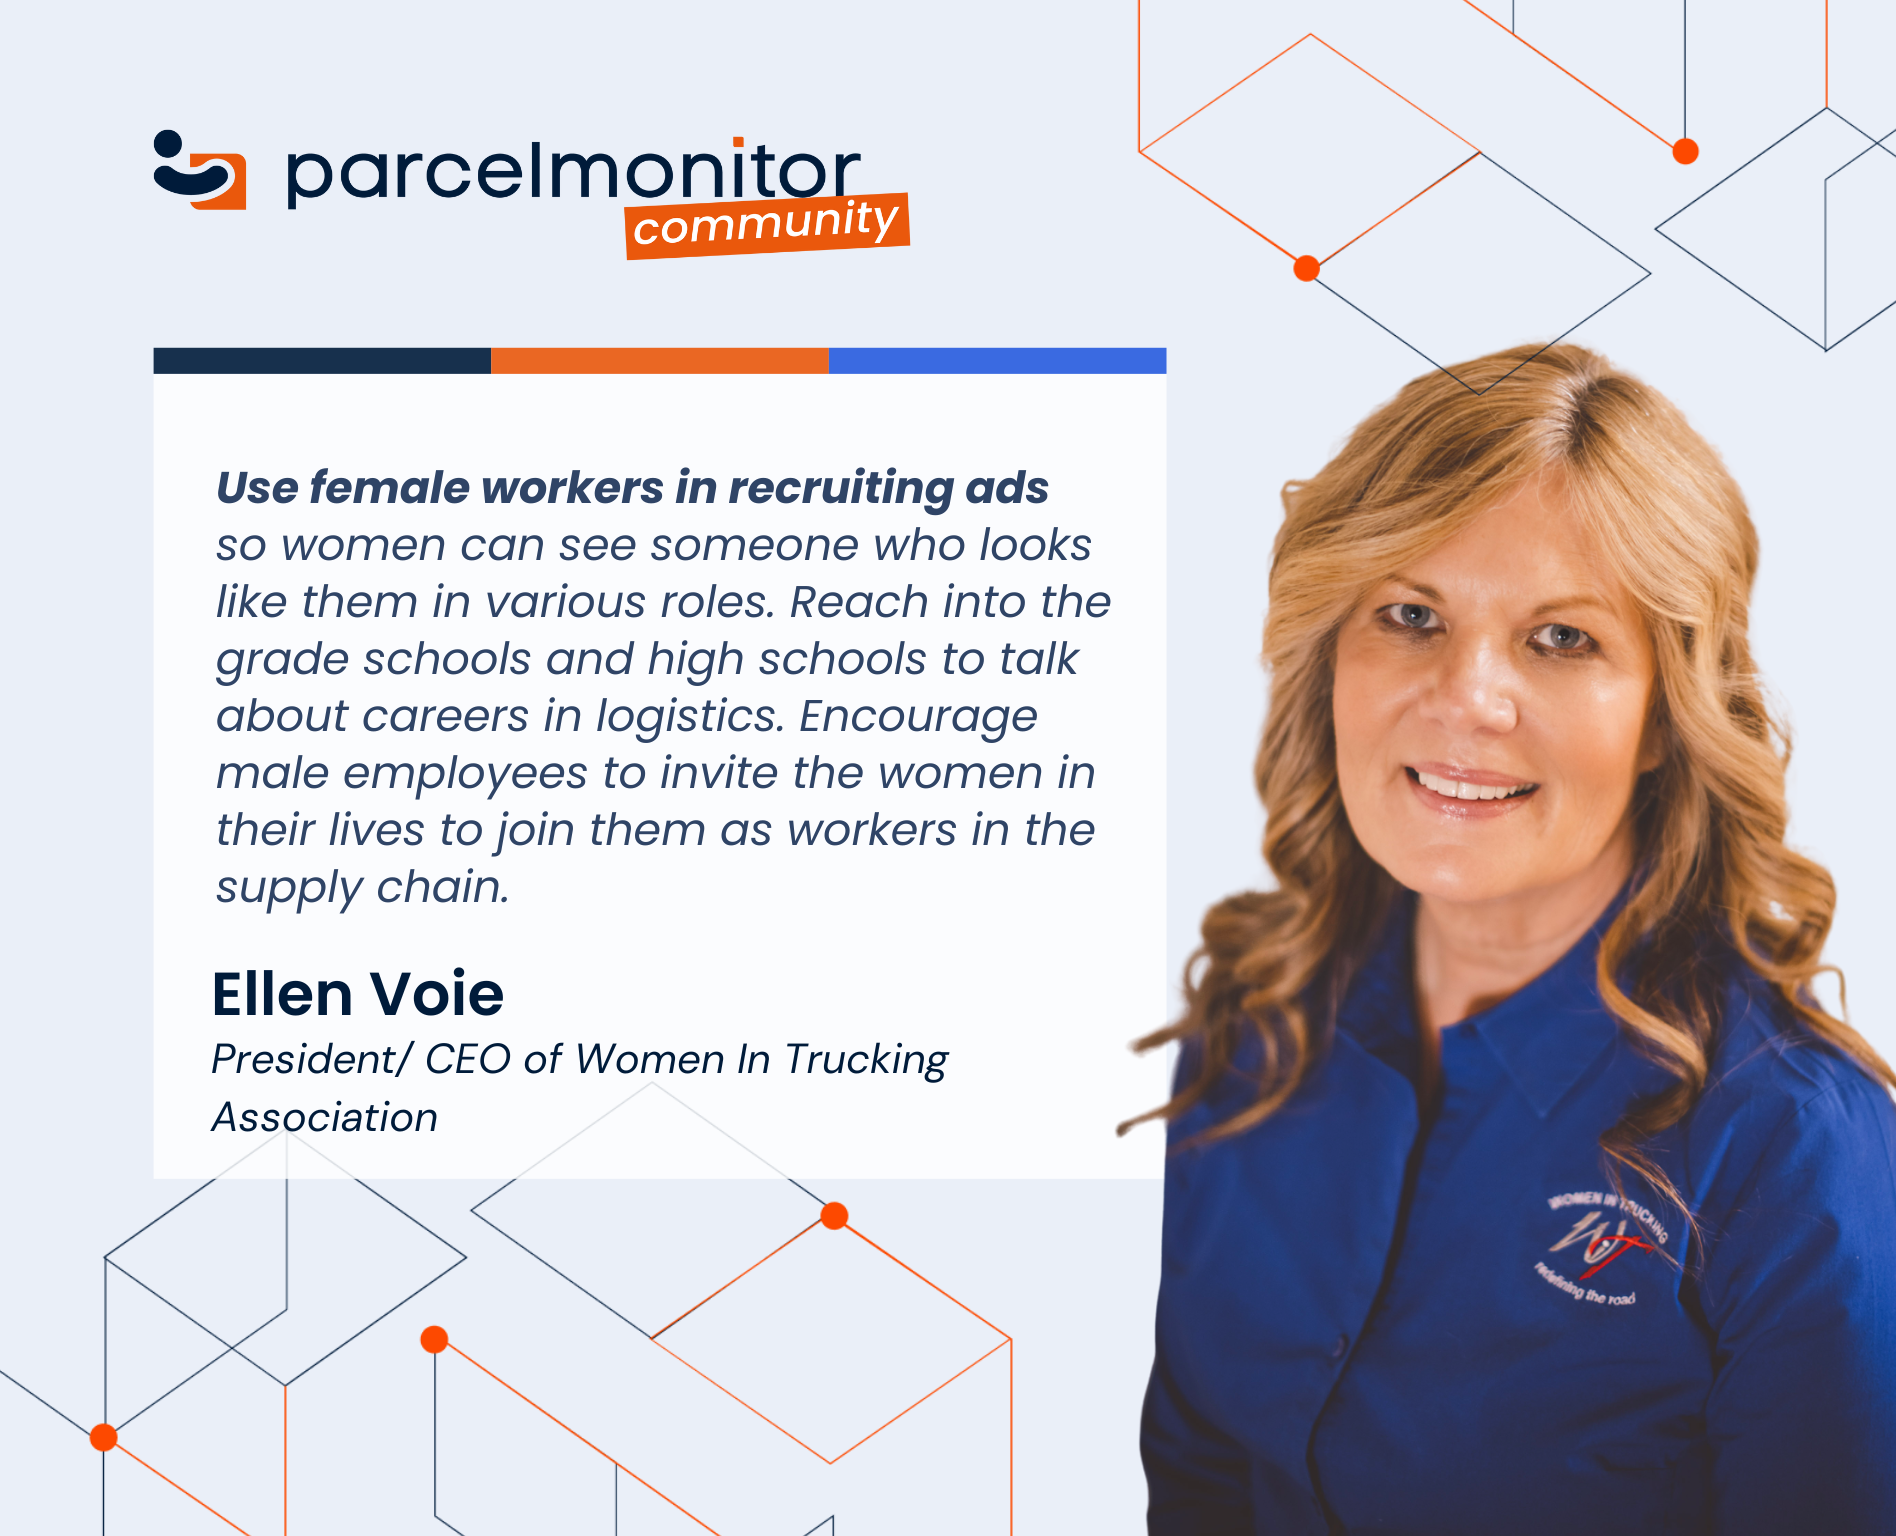 Ellen Voie, President/ Chief Executive Officer at Women In Trucking Association